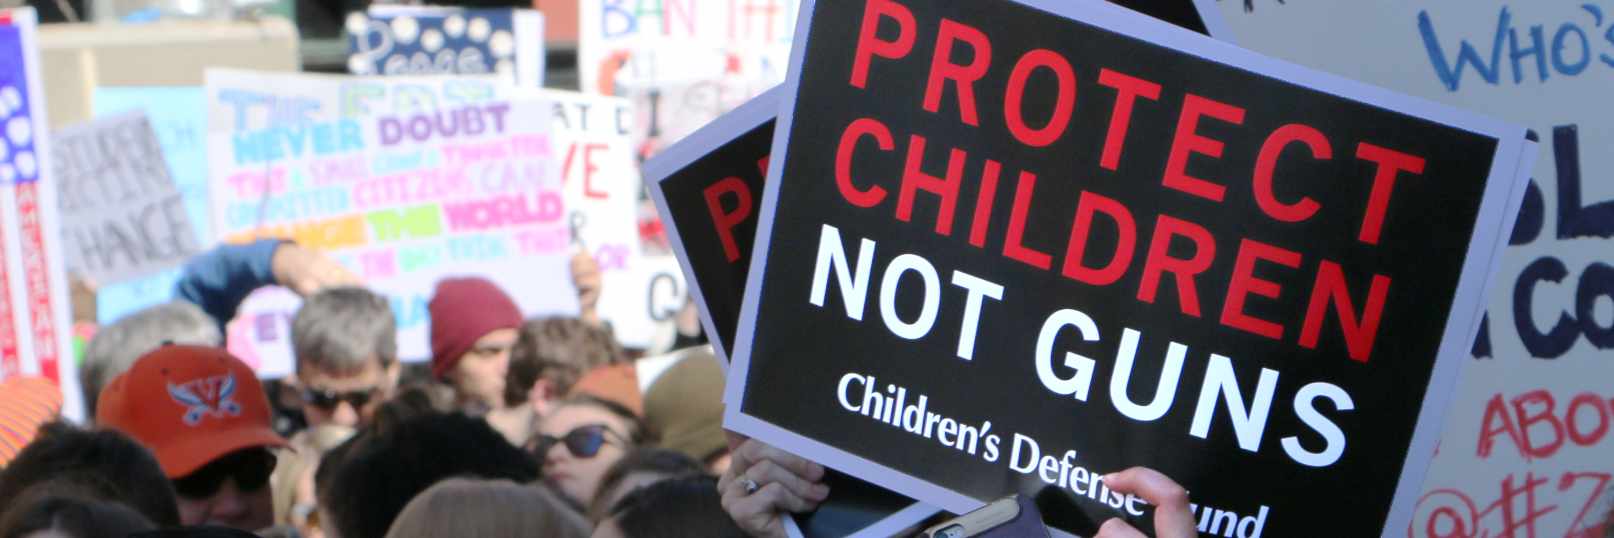 Protect children, not guns